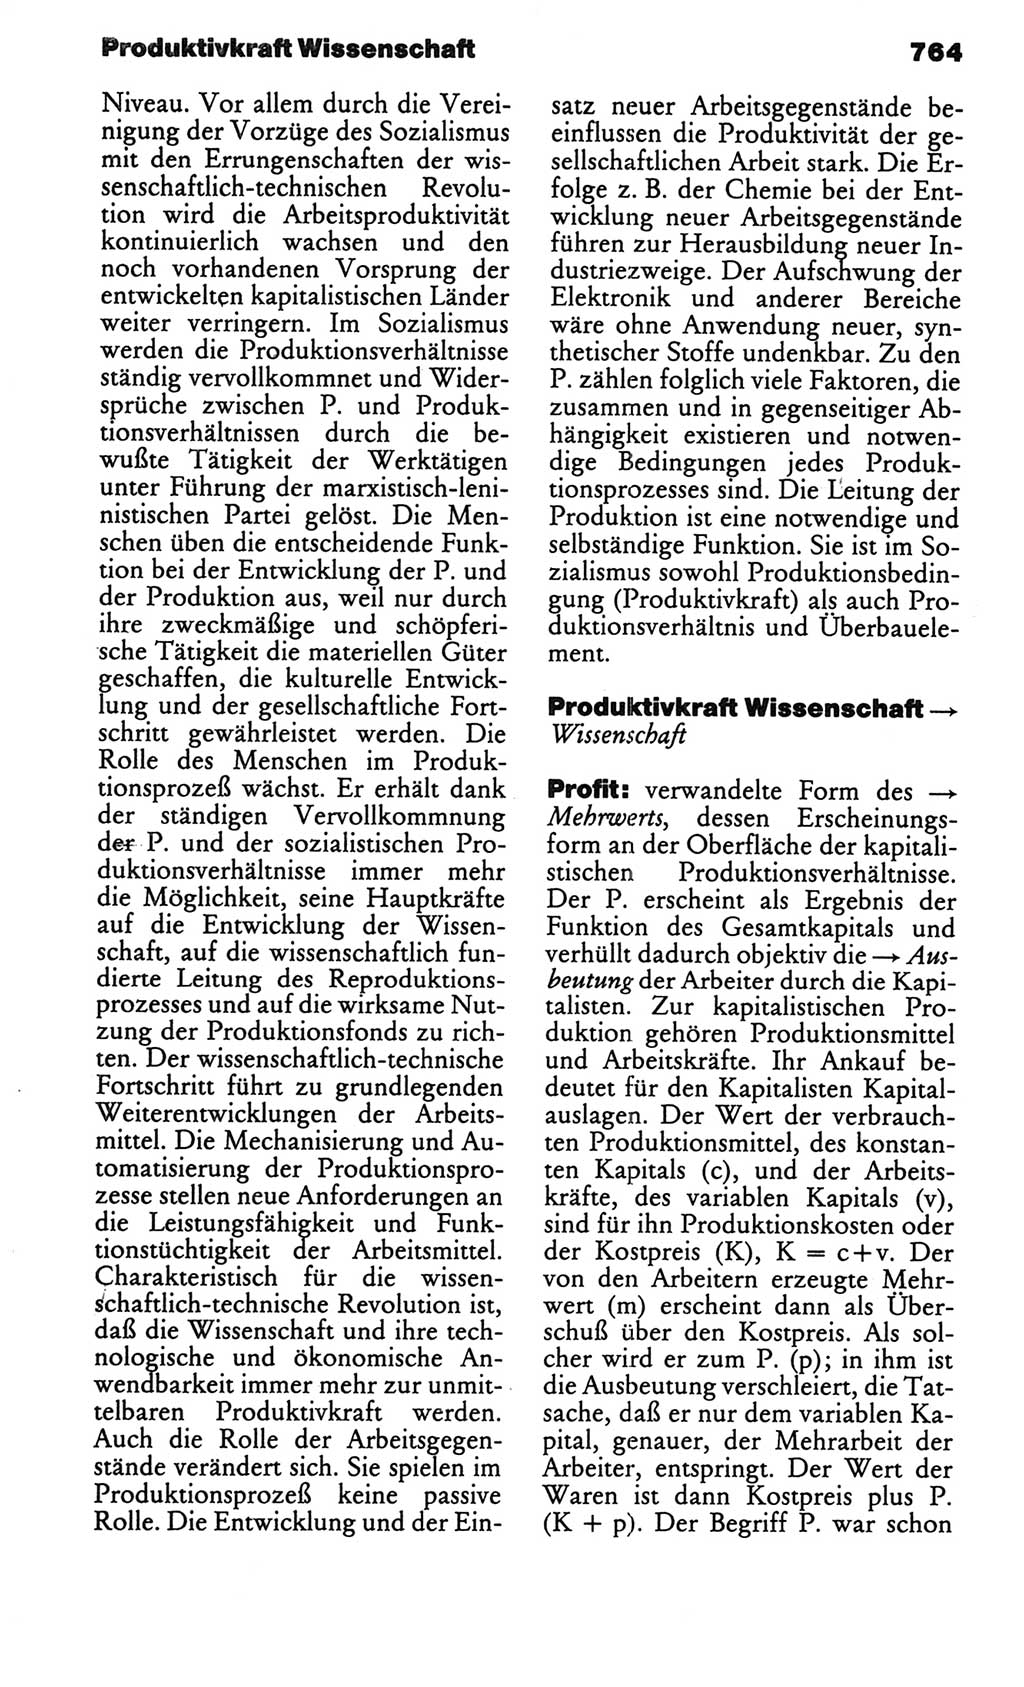 Kleines politisches Wörterbuch [Deutsche Demokratische Republik (DDR)] 1986, Seite 764 (Kl. pol. Wb. DDR 1986, S. 764)